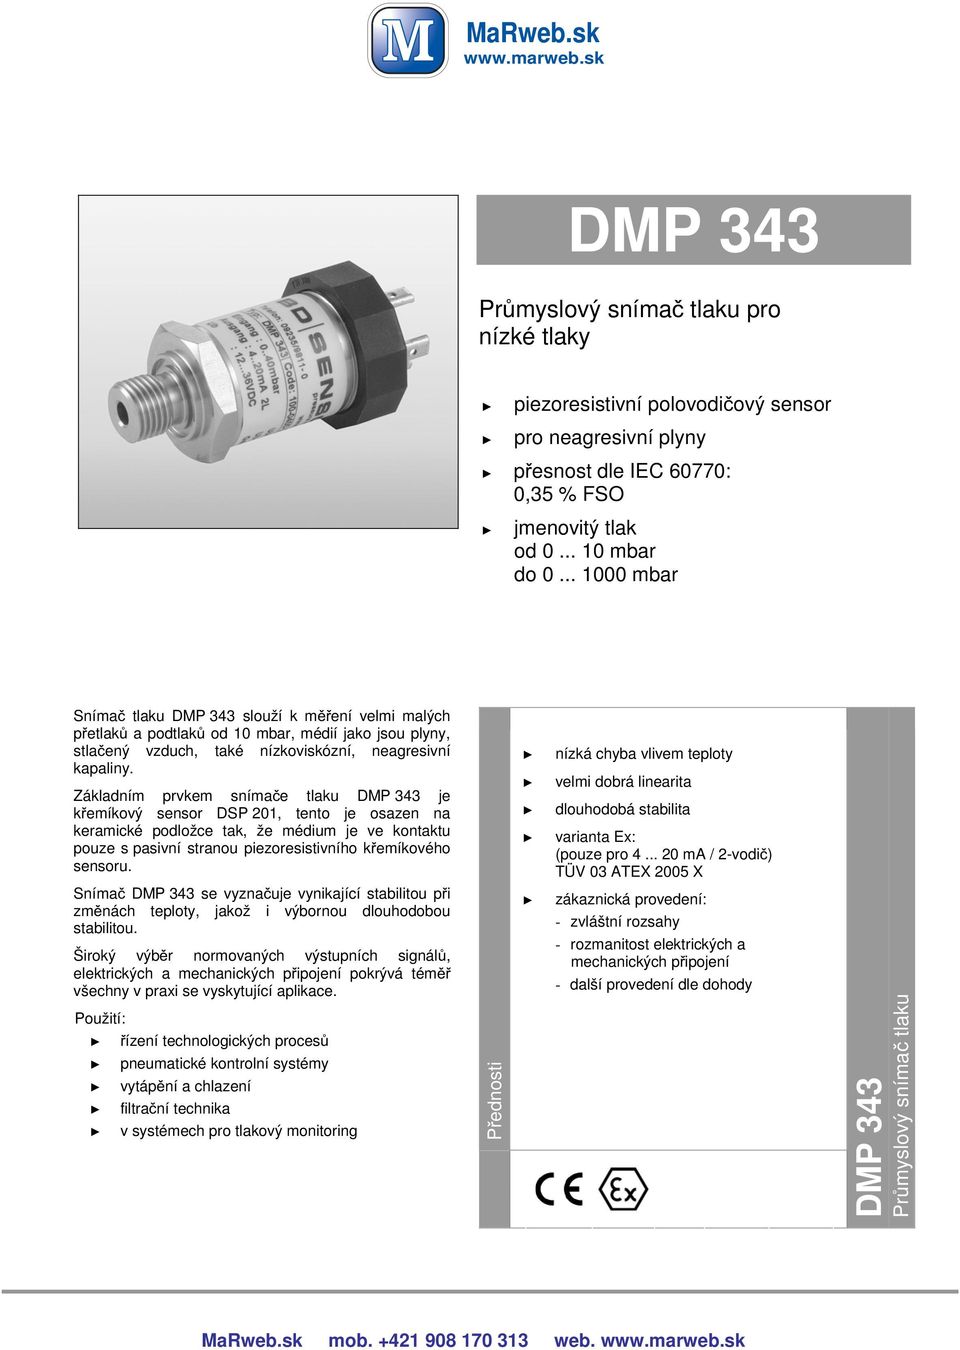 Základním prvkem snímače tlaku DMP 4 je křemíkový sensor DSP 0, tento je osazen na keramické podložce tak, že médium je ve kontaktu pouze s pasivní stranou piezoresistivního křemíkového sensoru.